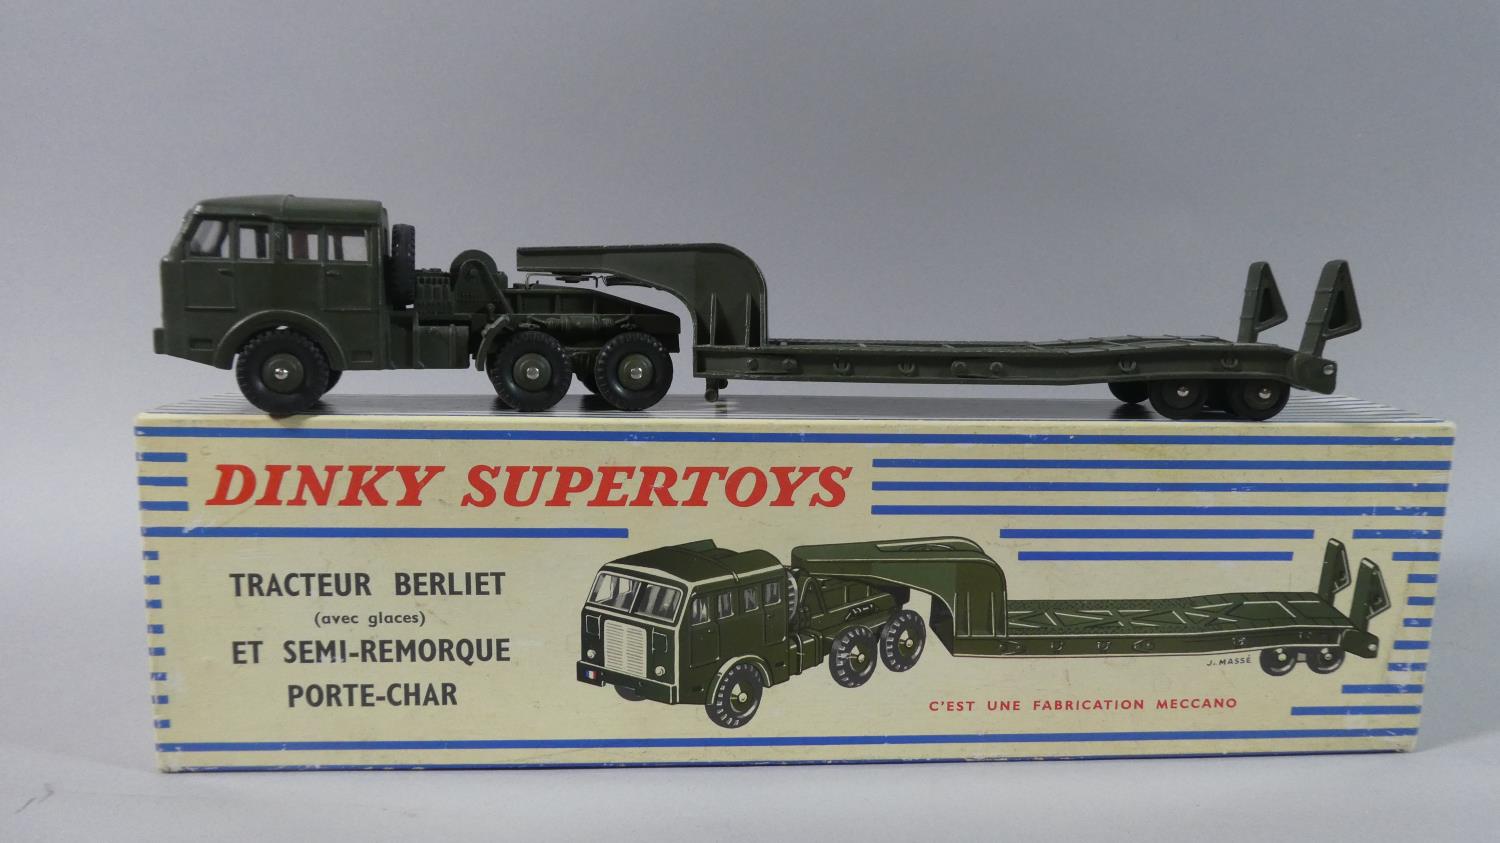 A French Boxed Dinky Supertoys Tracteur Berliet (Avec Glaces) etc Semi-Remorque Porte-Char No 890